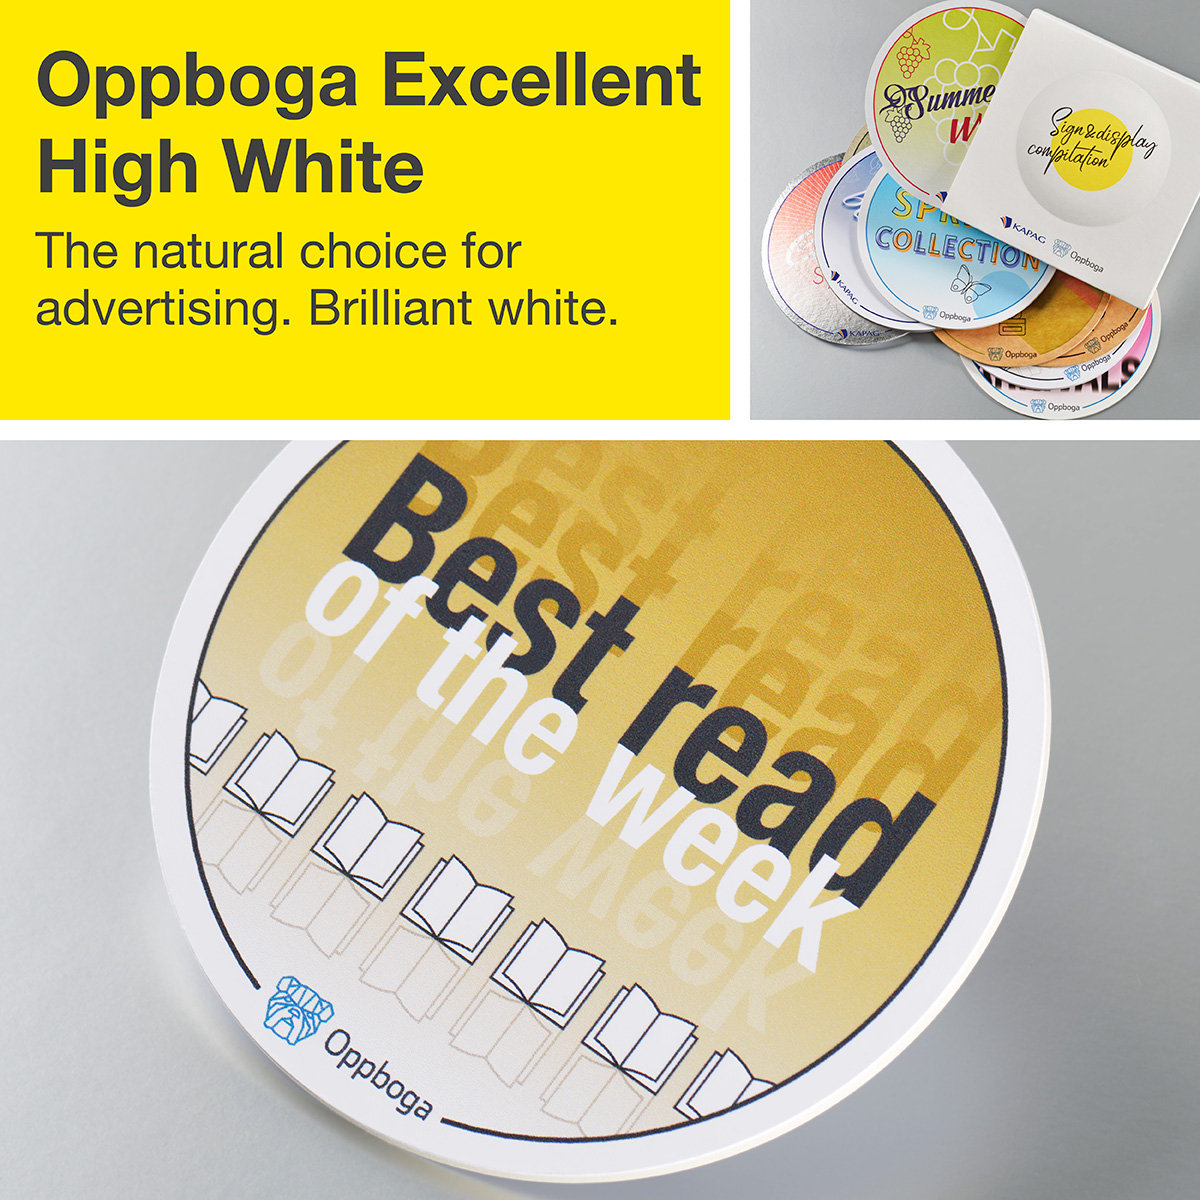 Oppboga Excellent™ High White